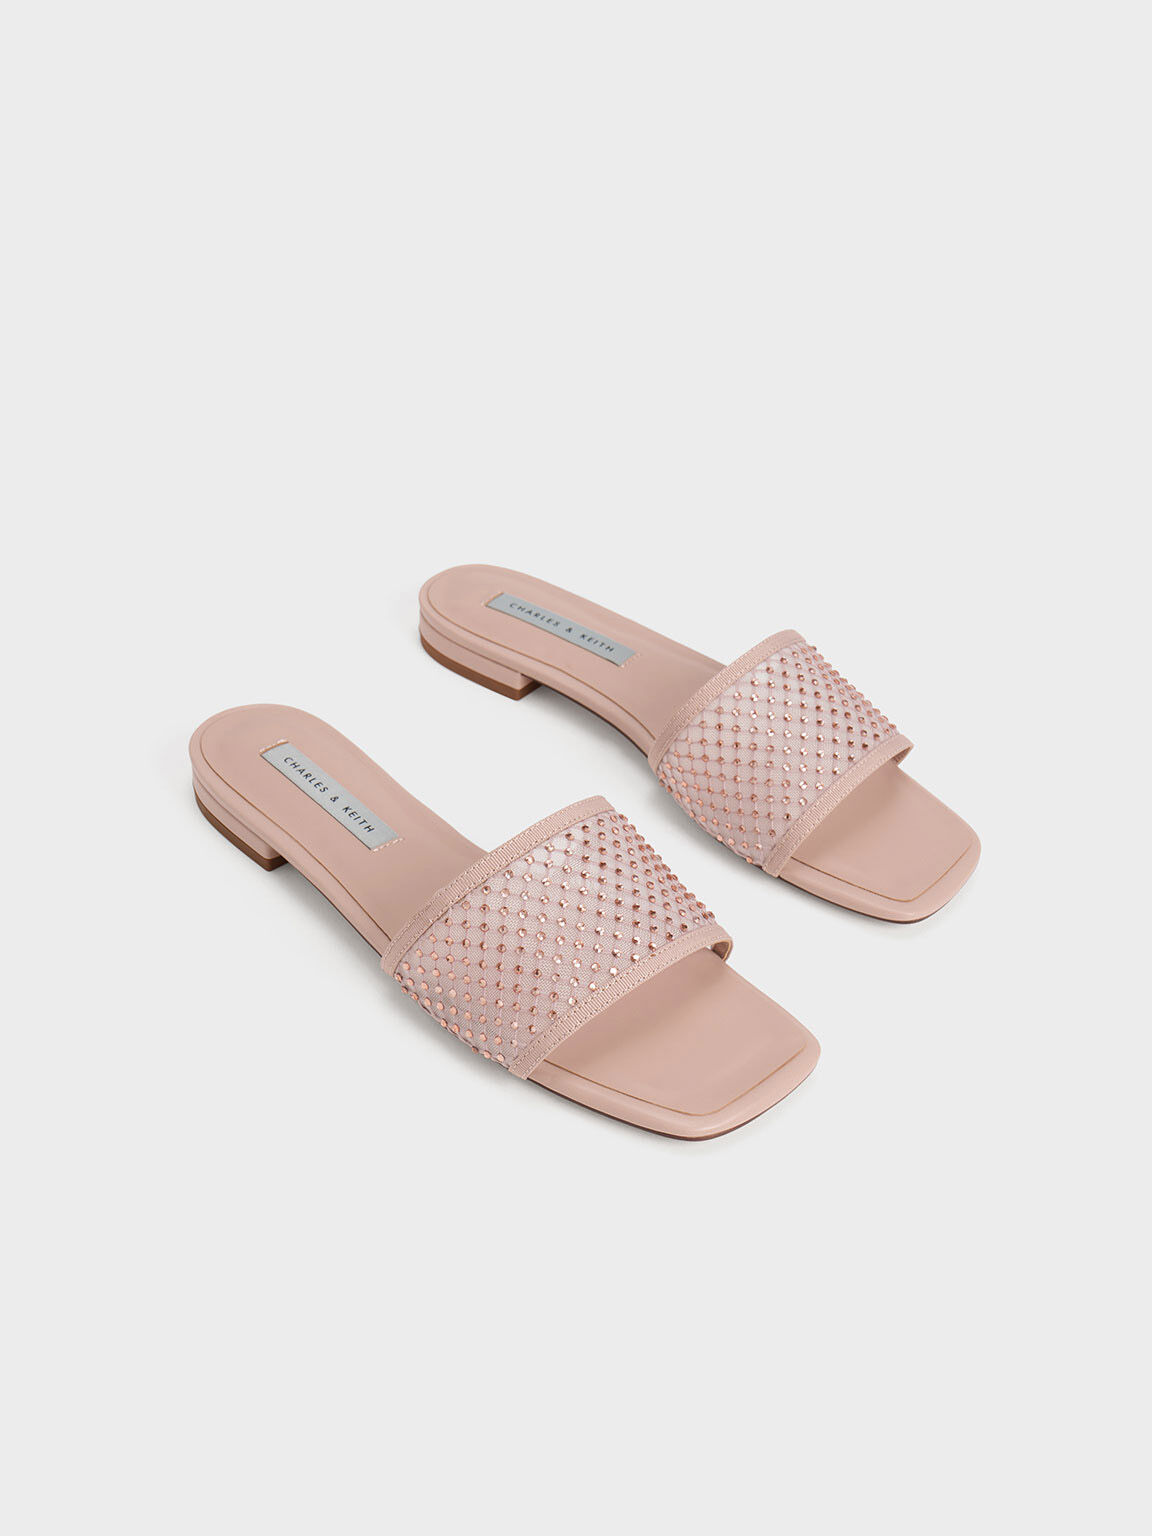 Gem-Encrusted Mesh Slide Sandals, Nude, hi-res